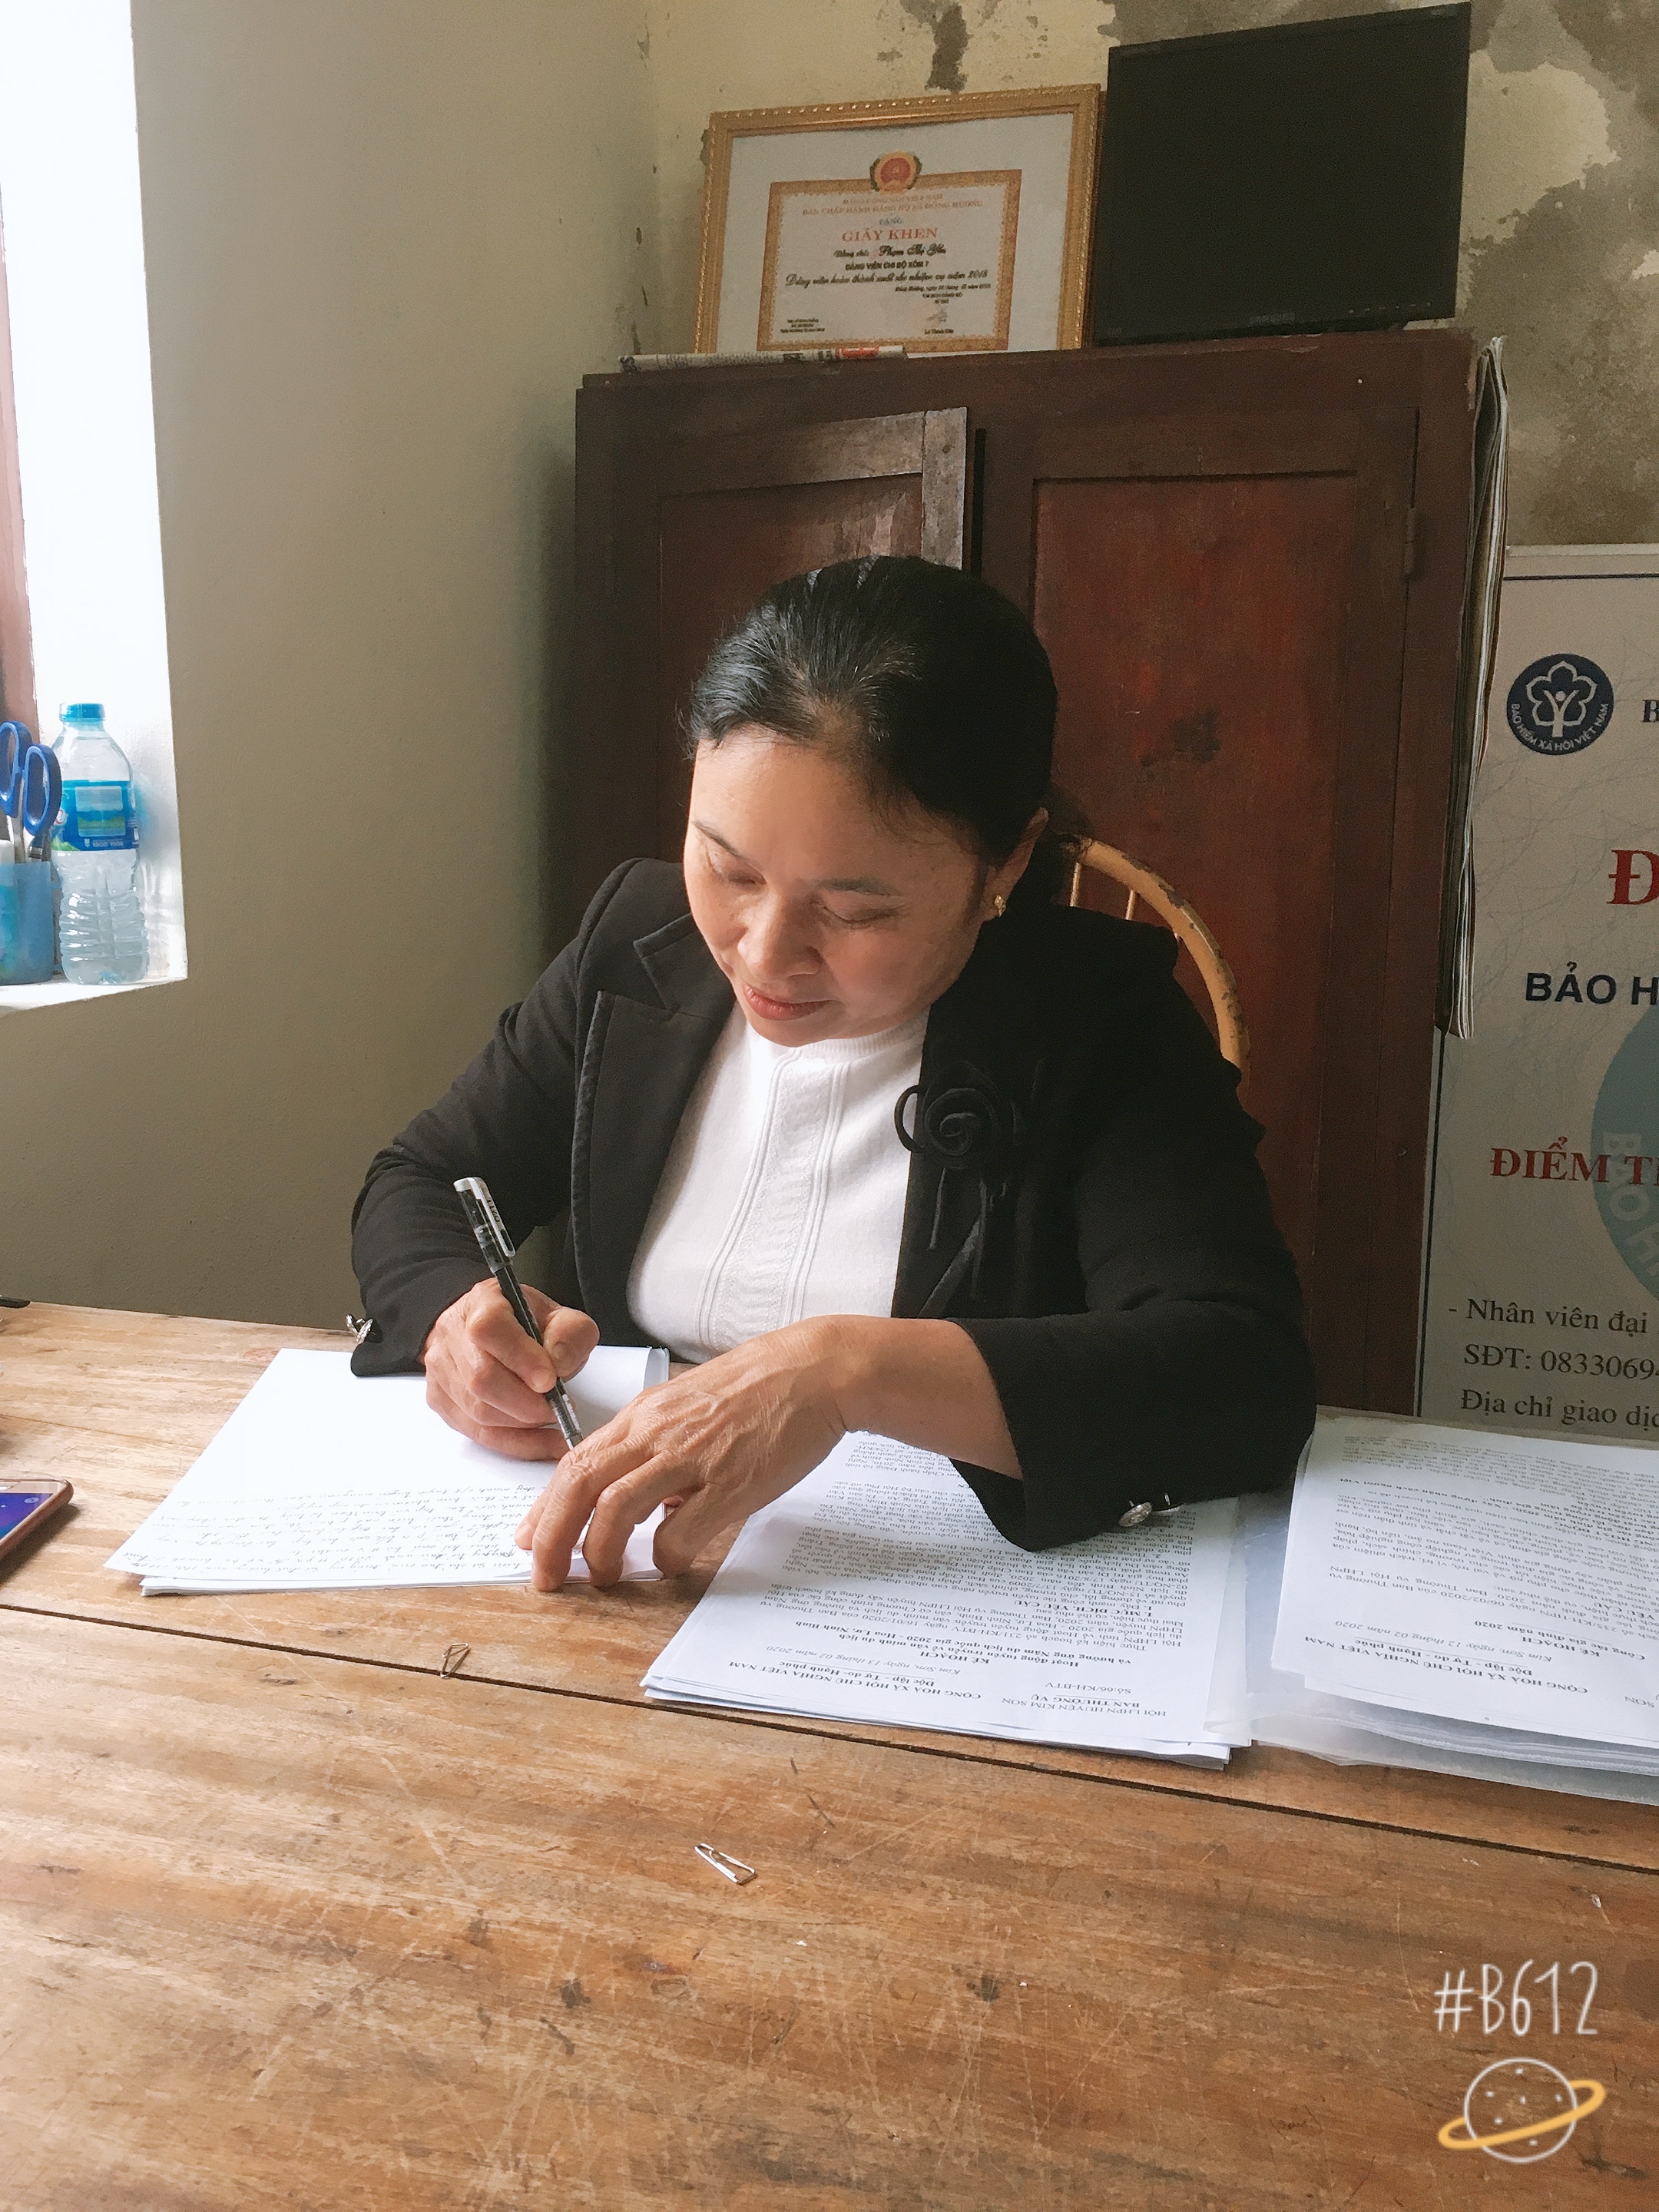 PHỎNG VẤN: Bà Phạm Thị Yến – Phó Chủ tịch Hội Liên hiệp phụ nữ xã Đồng Hướng về những kết quả nổi bật Hội đạt được năm 2019